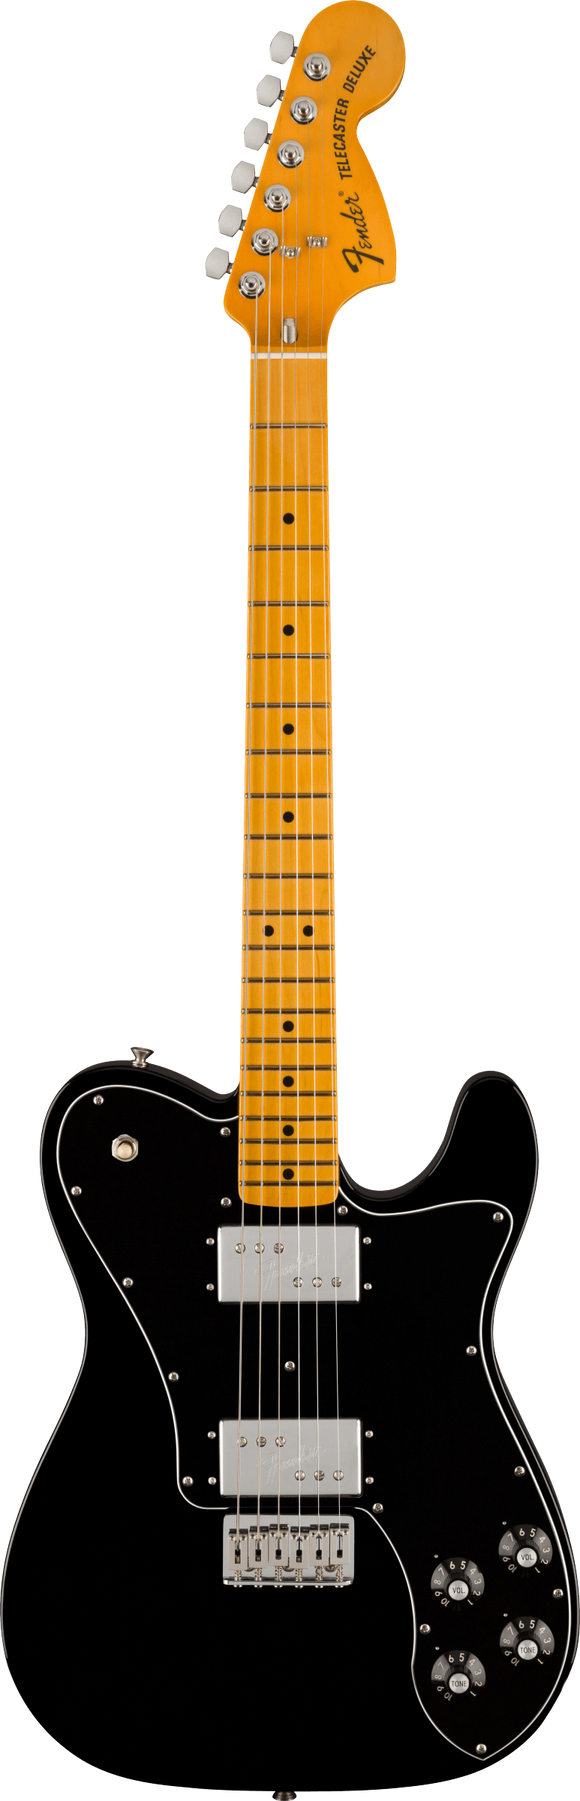 Fender American Vintage II 1972 Telecaster Thinline, Maple Fingerboard, Black